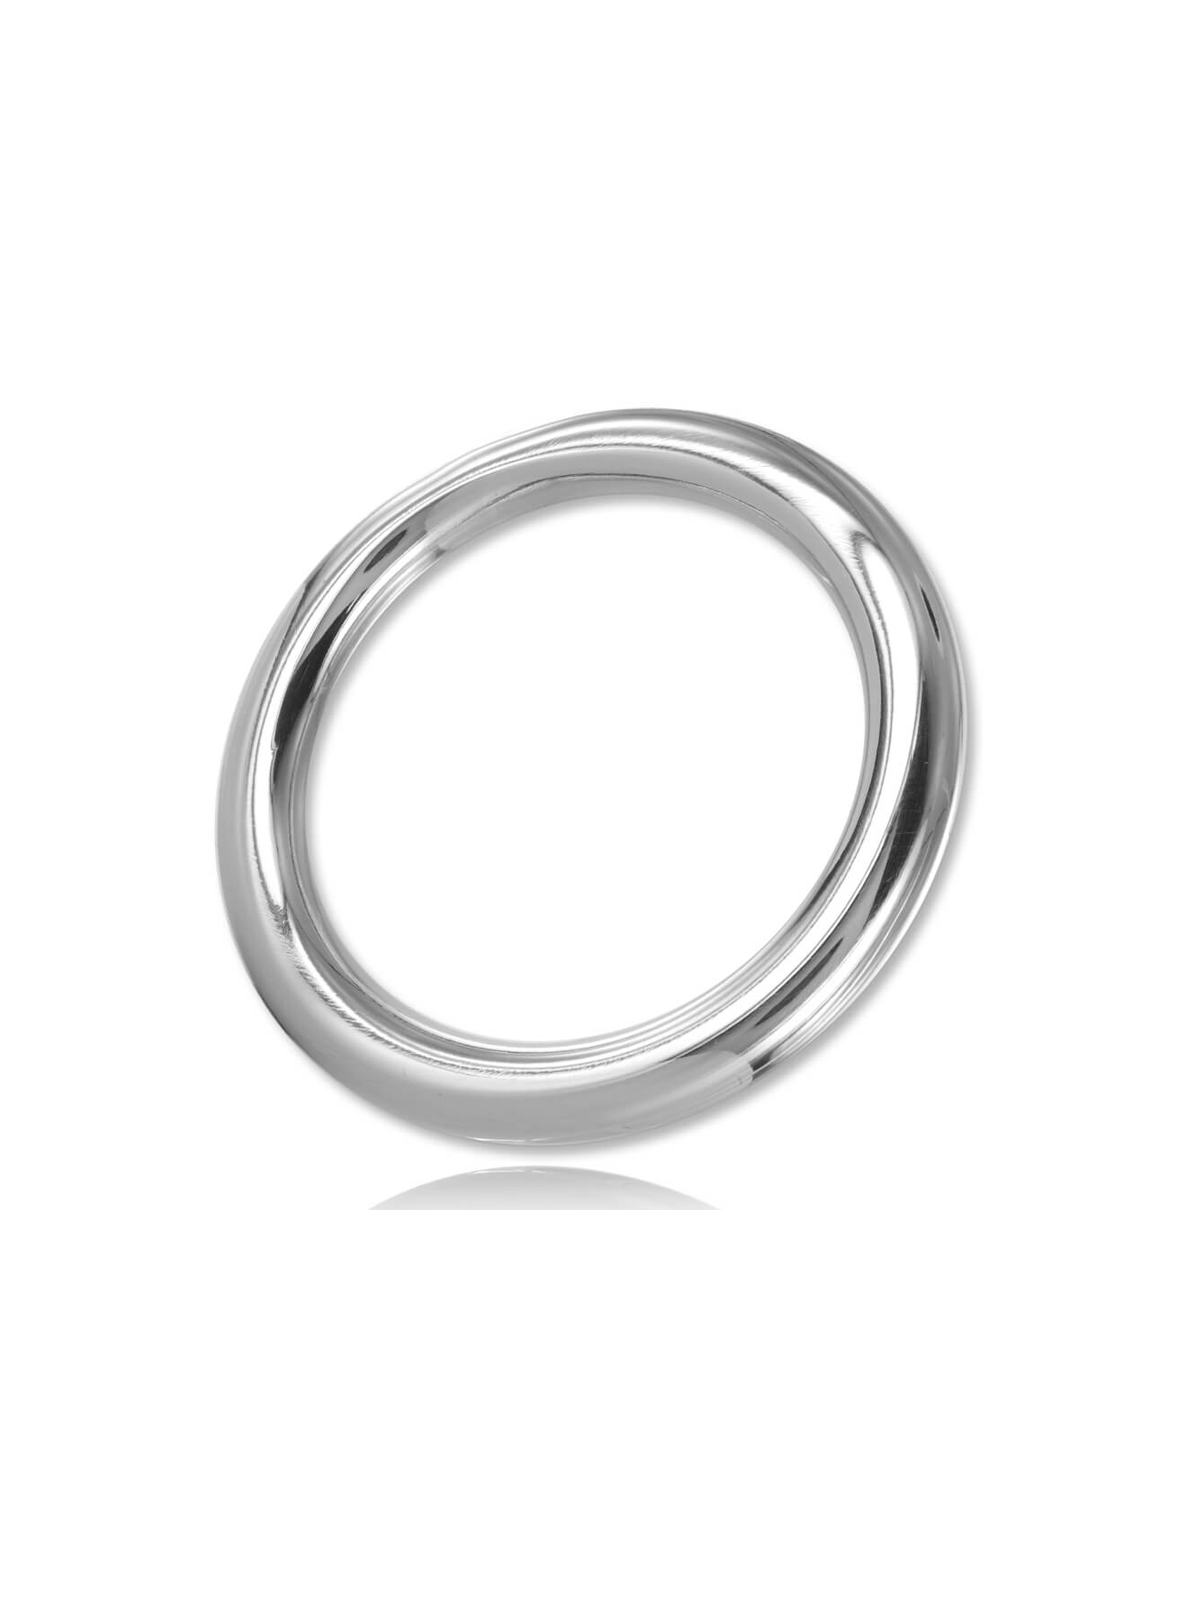 Metalhard Round Anilla Pene Metal Wire C Ring - Comprar Anillo metal pene Metal Hard - Anillos de metal pene (1)